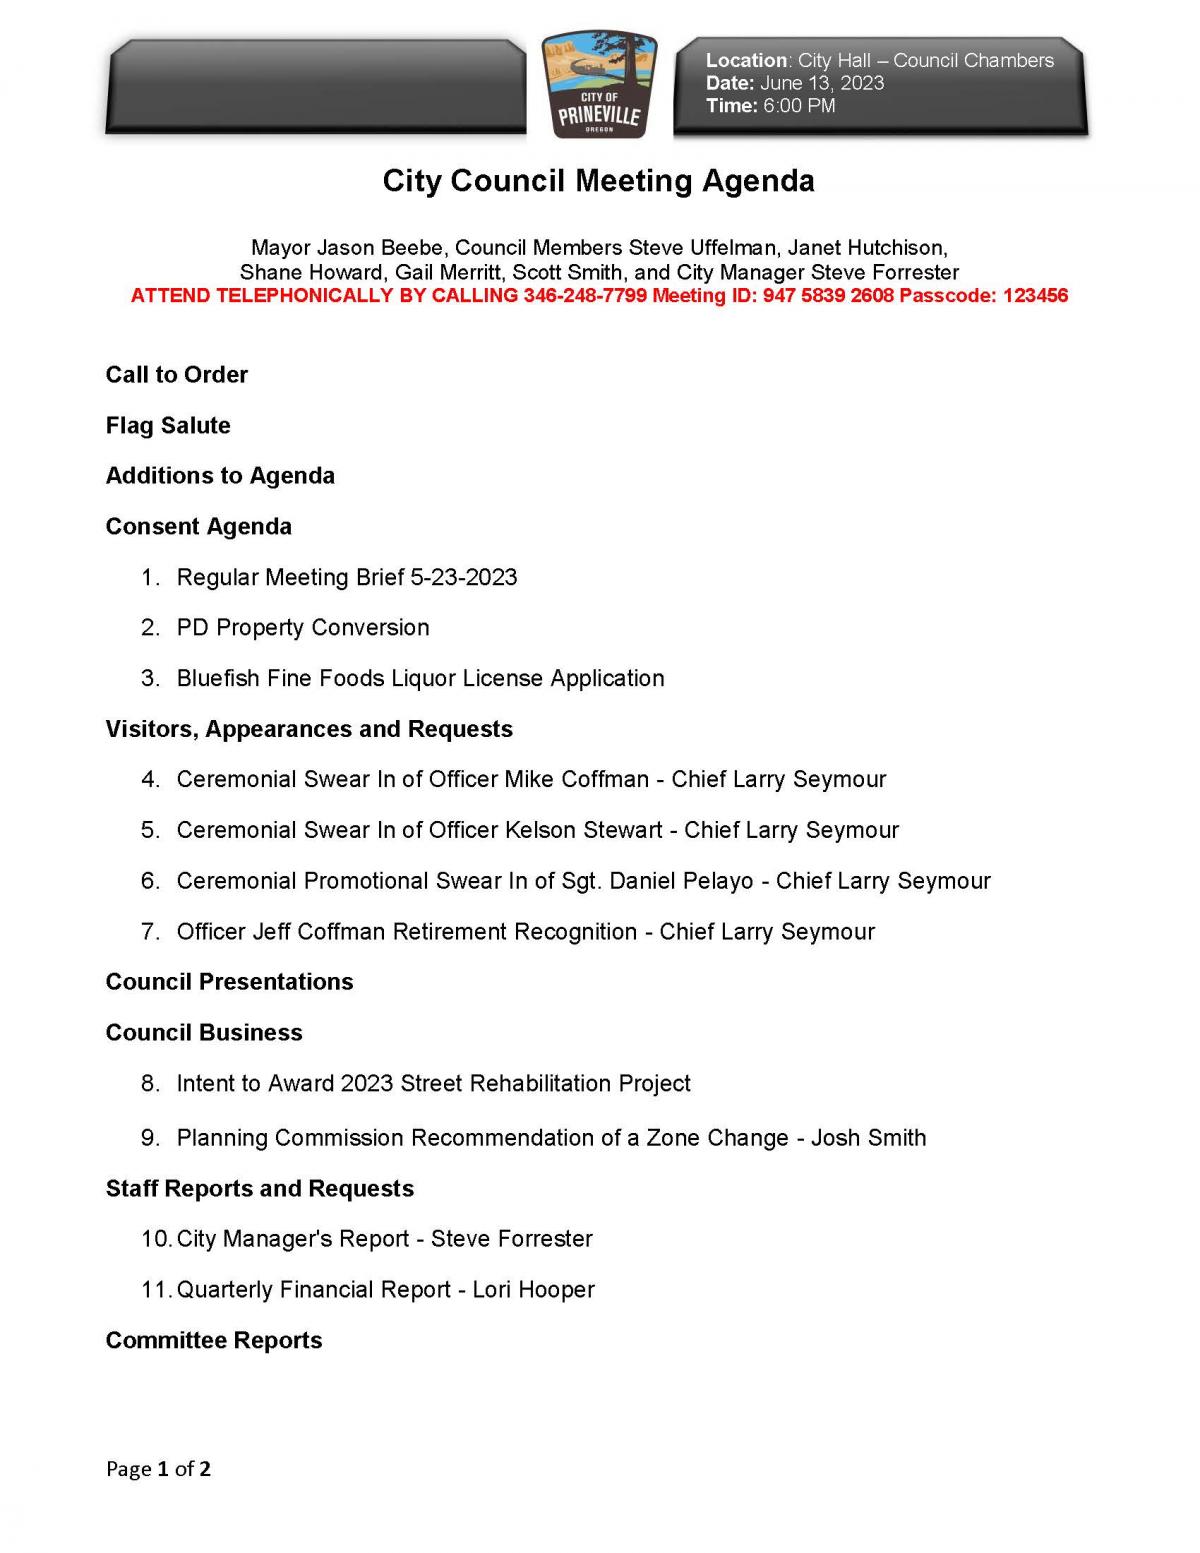 Council Agenda pg 1